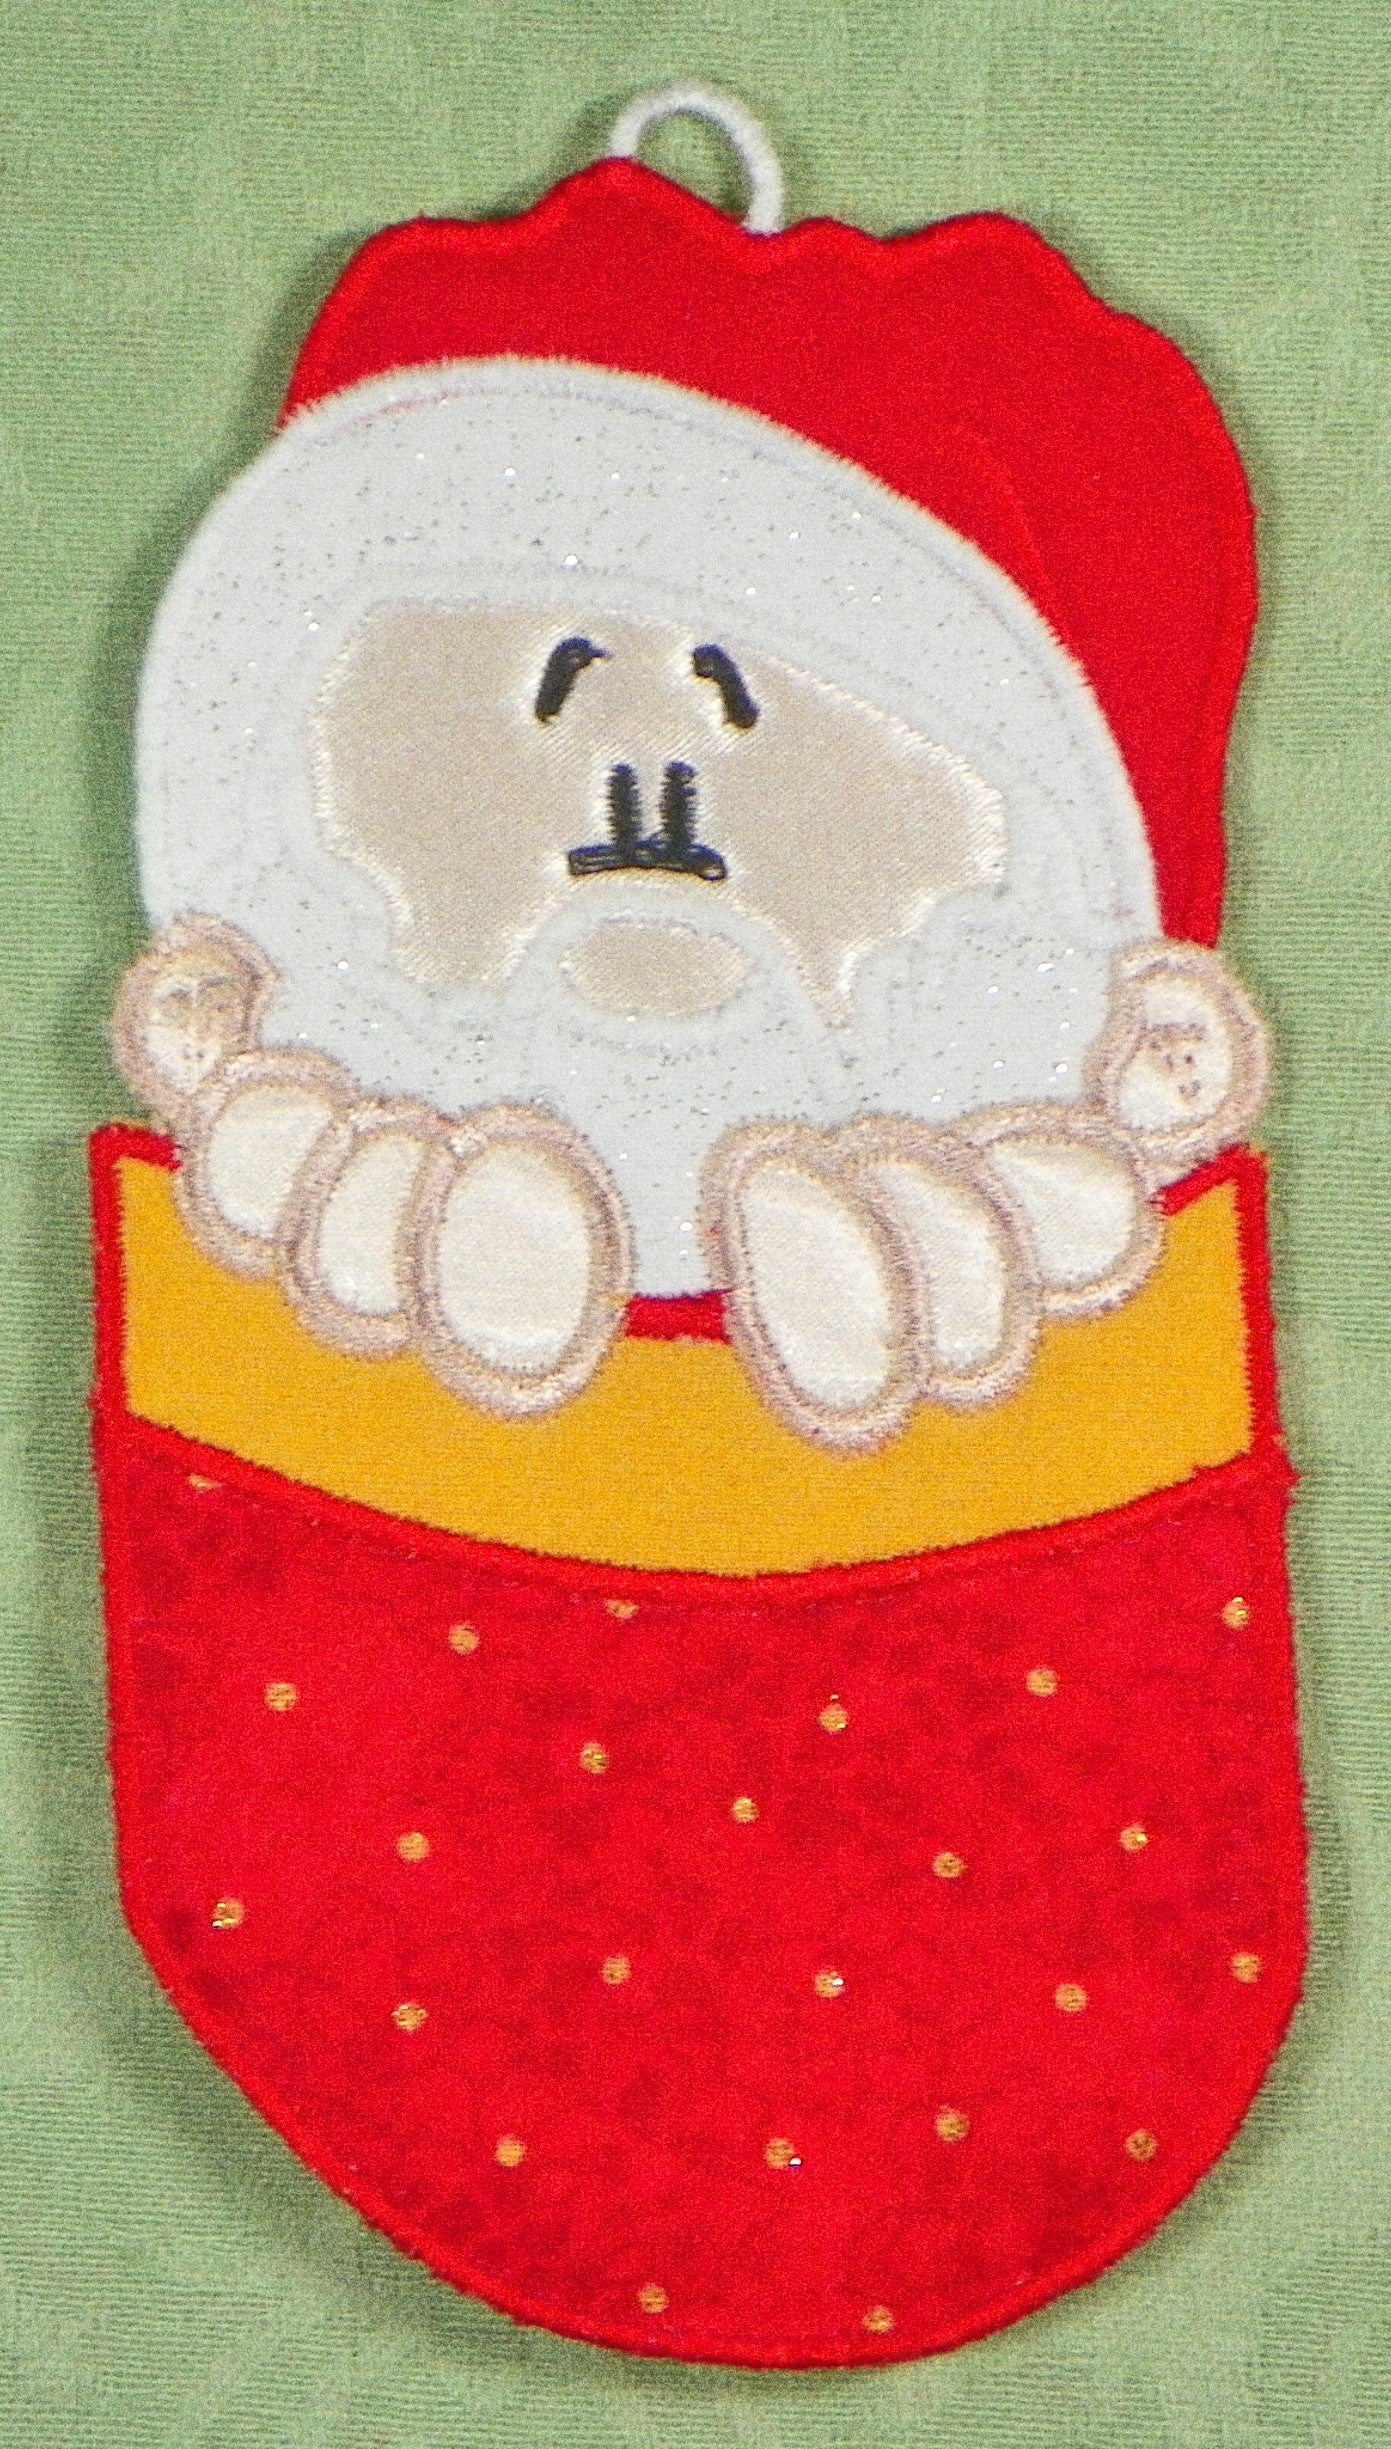 FSA Pocket Peepers Ornaments   [5x7] # 10727